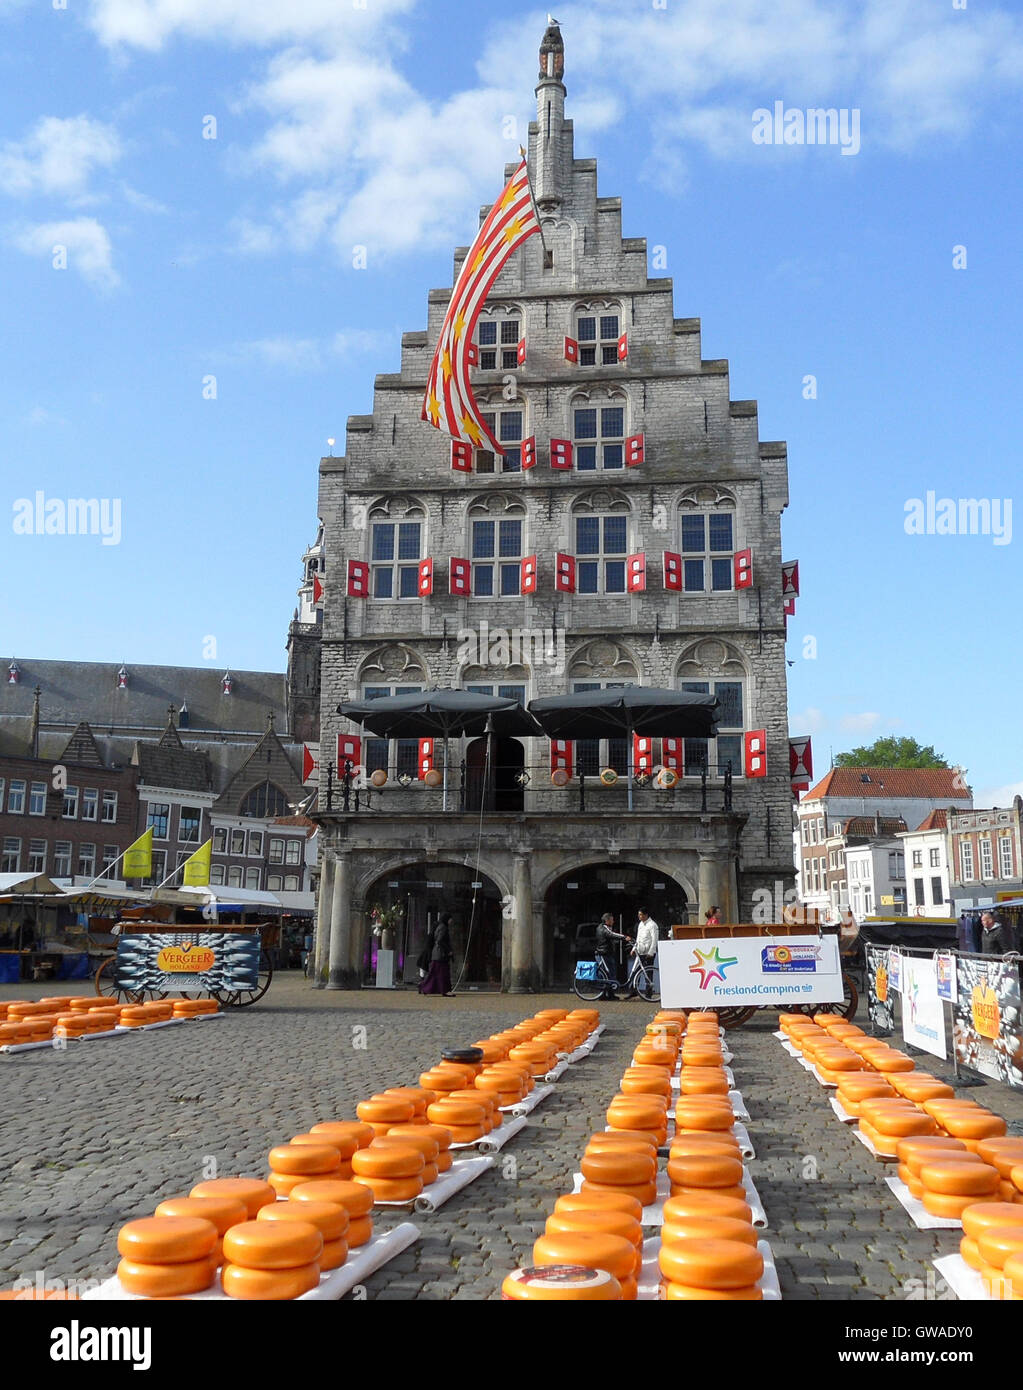 Le marché du fromage Gouda traditionnel dans la vieille ville de Gouda, Pays -Bas Photo Stock - Alamy